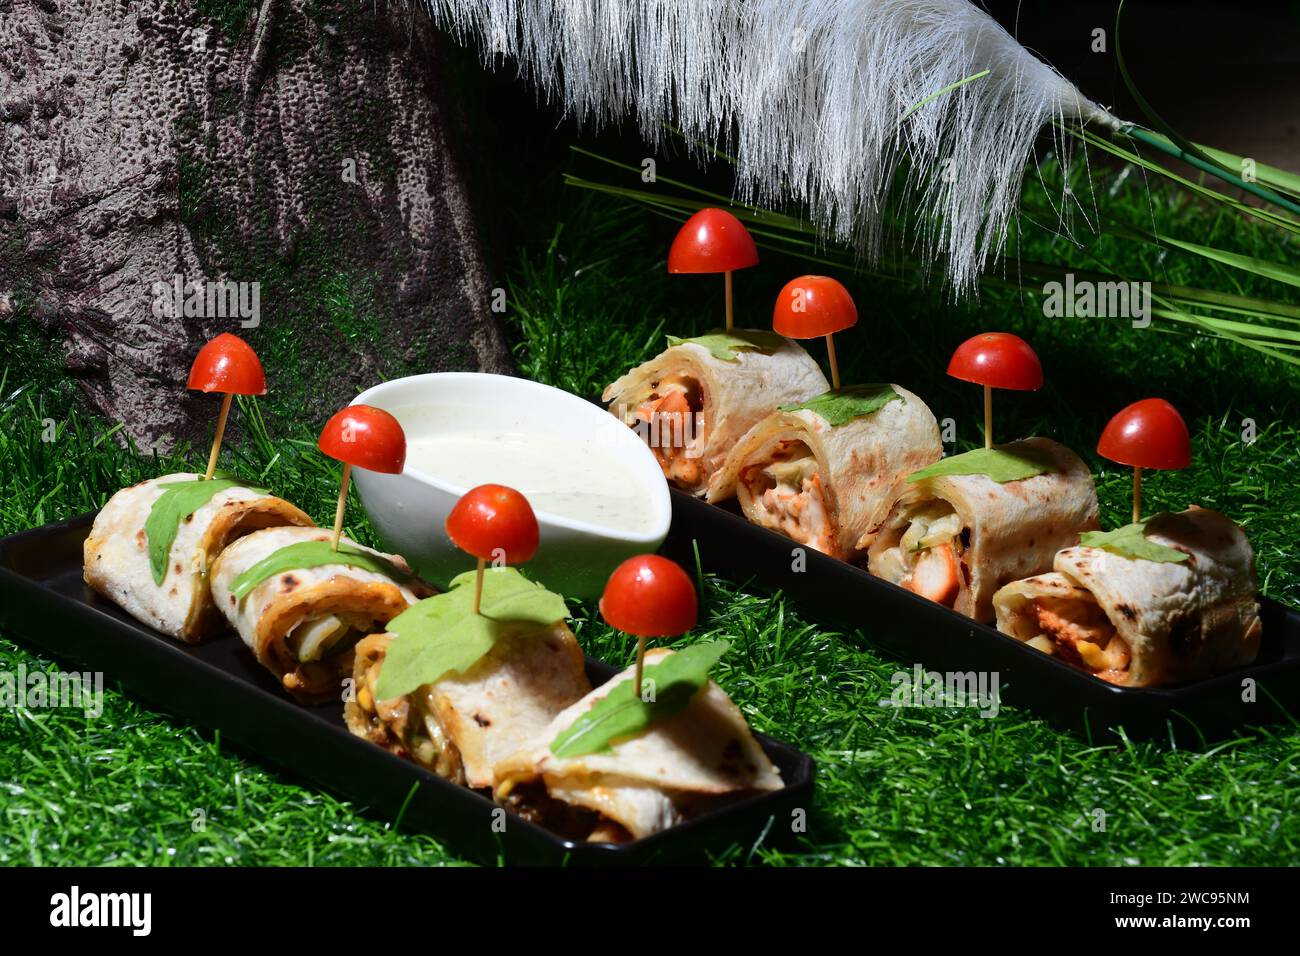 Un'appetitosa esposizione di due vassoi pieni di un delizioso assortimento di delizie culinarie diverse, completate da pomodori vivaci e maturi Foto Stock